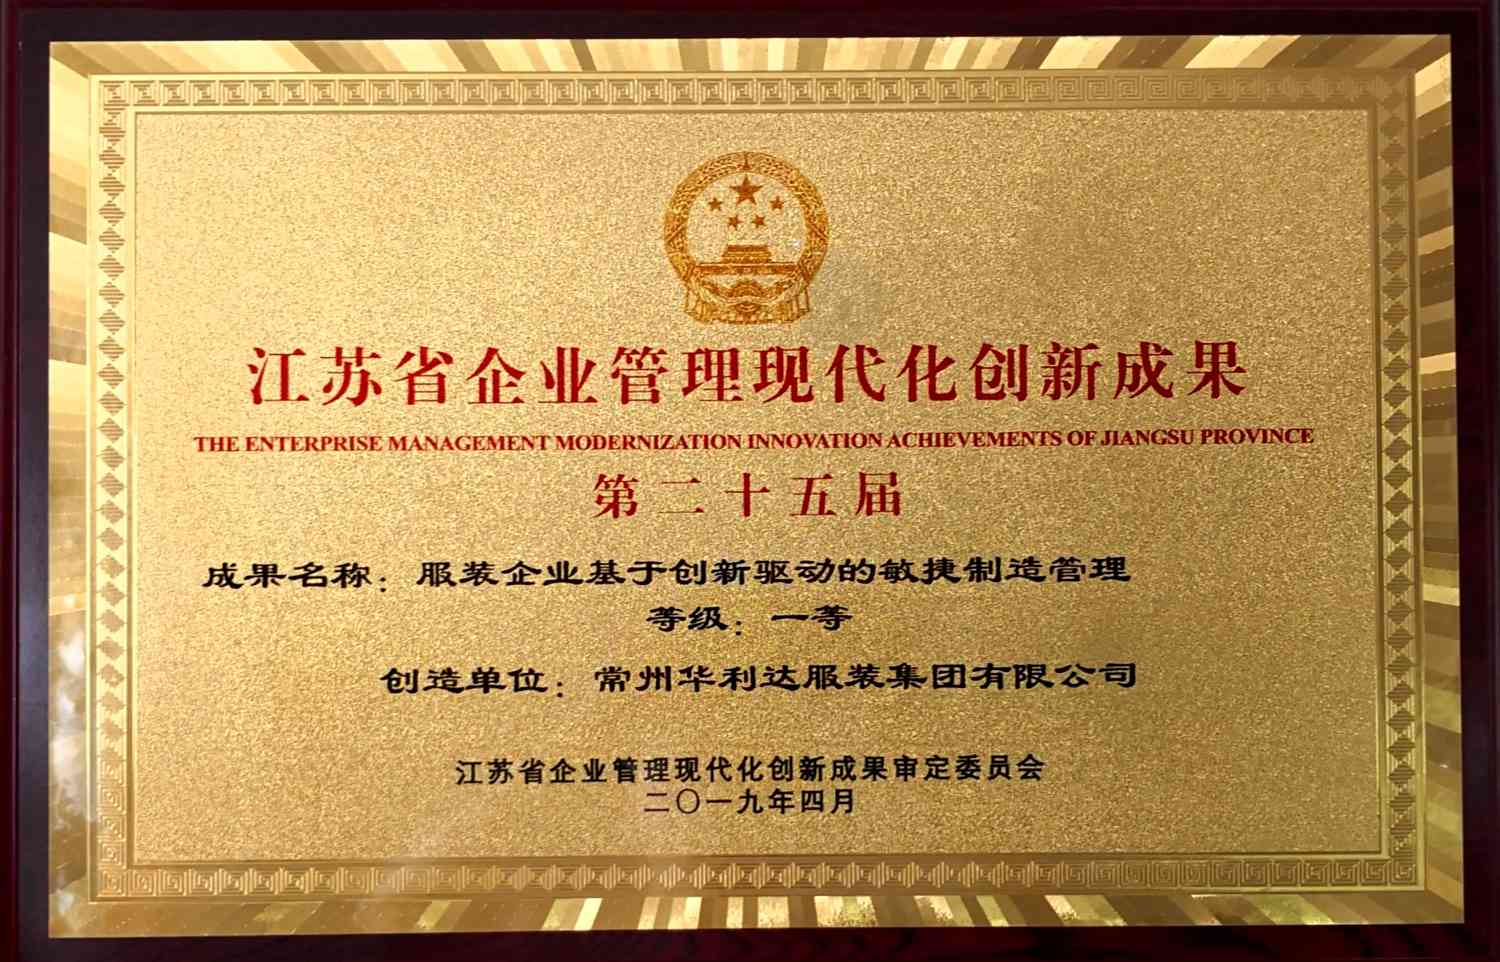 集团敏捷制造管理项目获二十五届江苏省企业管理现代化创新成果一 等奖